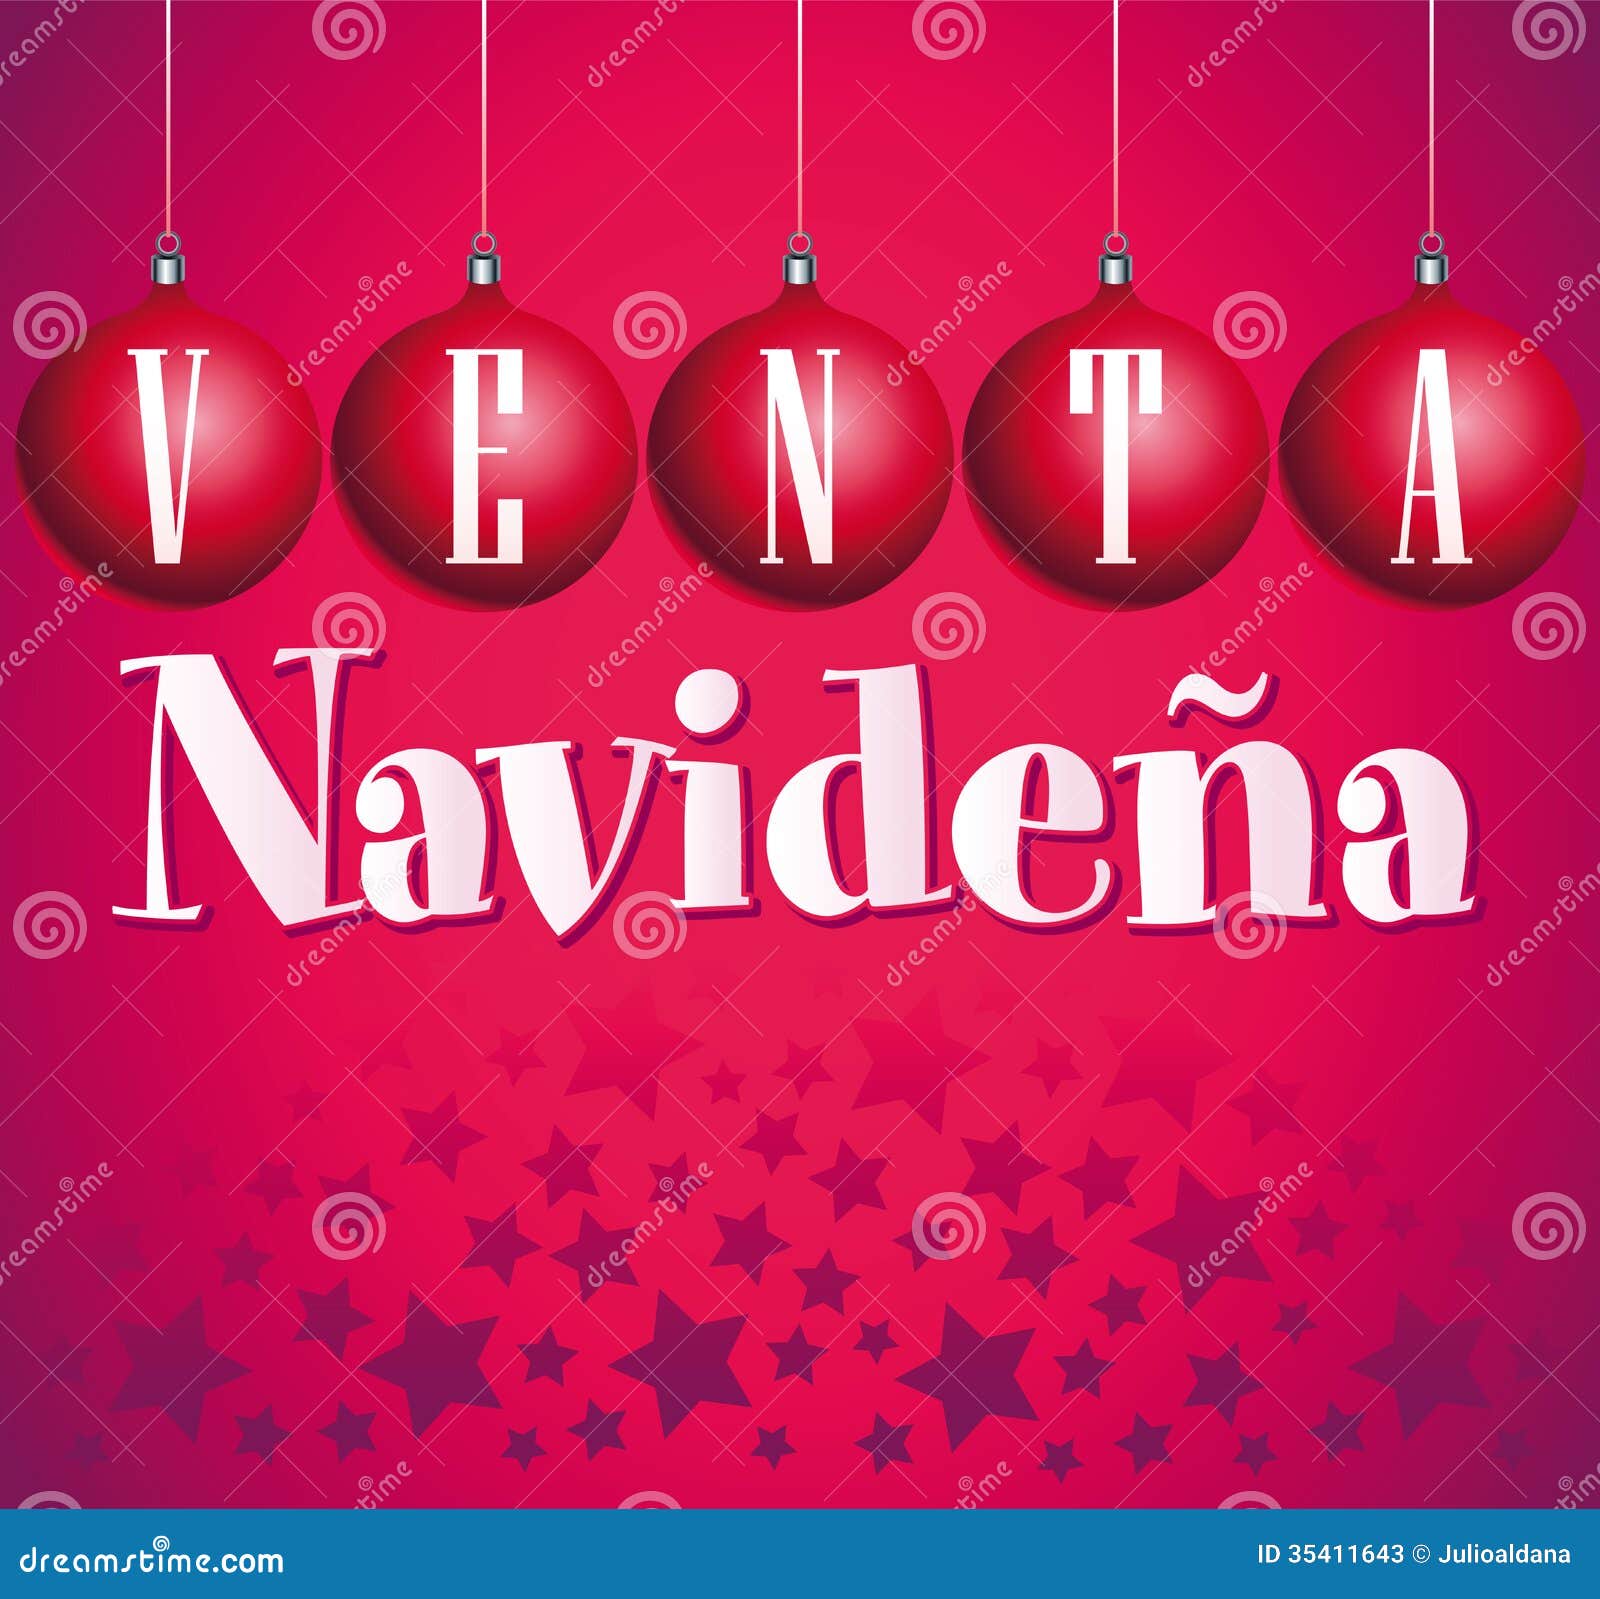 Venta Navidena - Christmas Sale Spanish Stock Image 